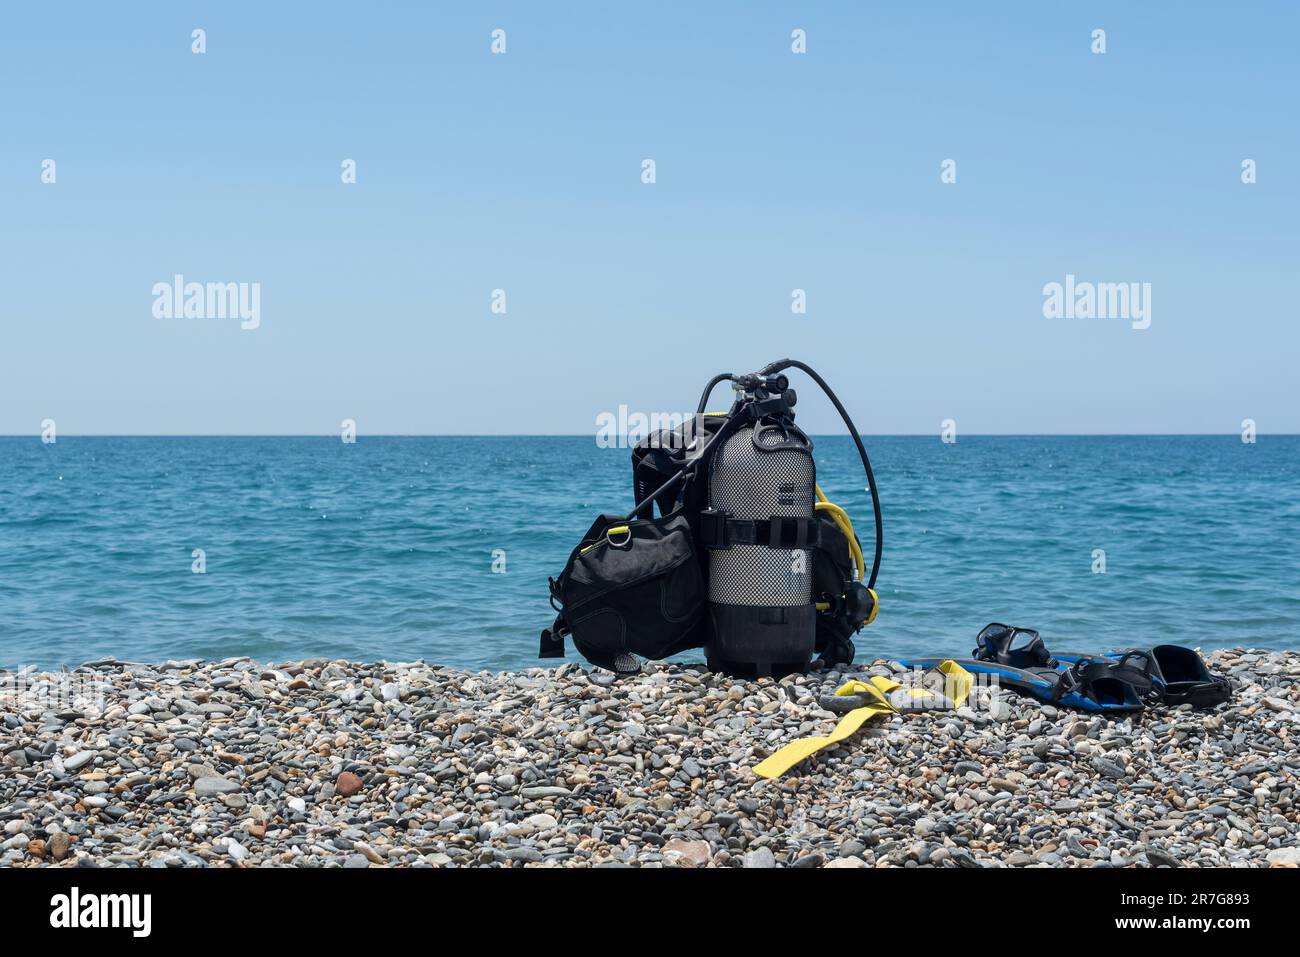 Équipement de plongée, y compris réservoir d'oxygène, palmes, lunettes, régulateur et poids sur la rive d'une plage rocheuse. Sports nautiques. Initiation à la plongée sous-marine Banque D'Images